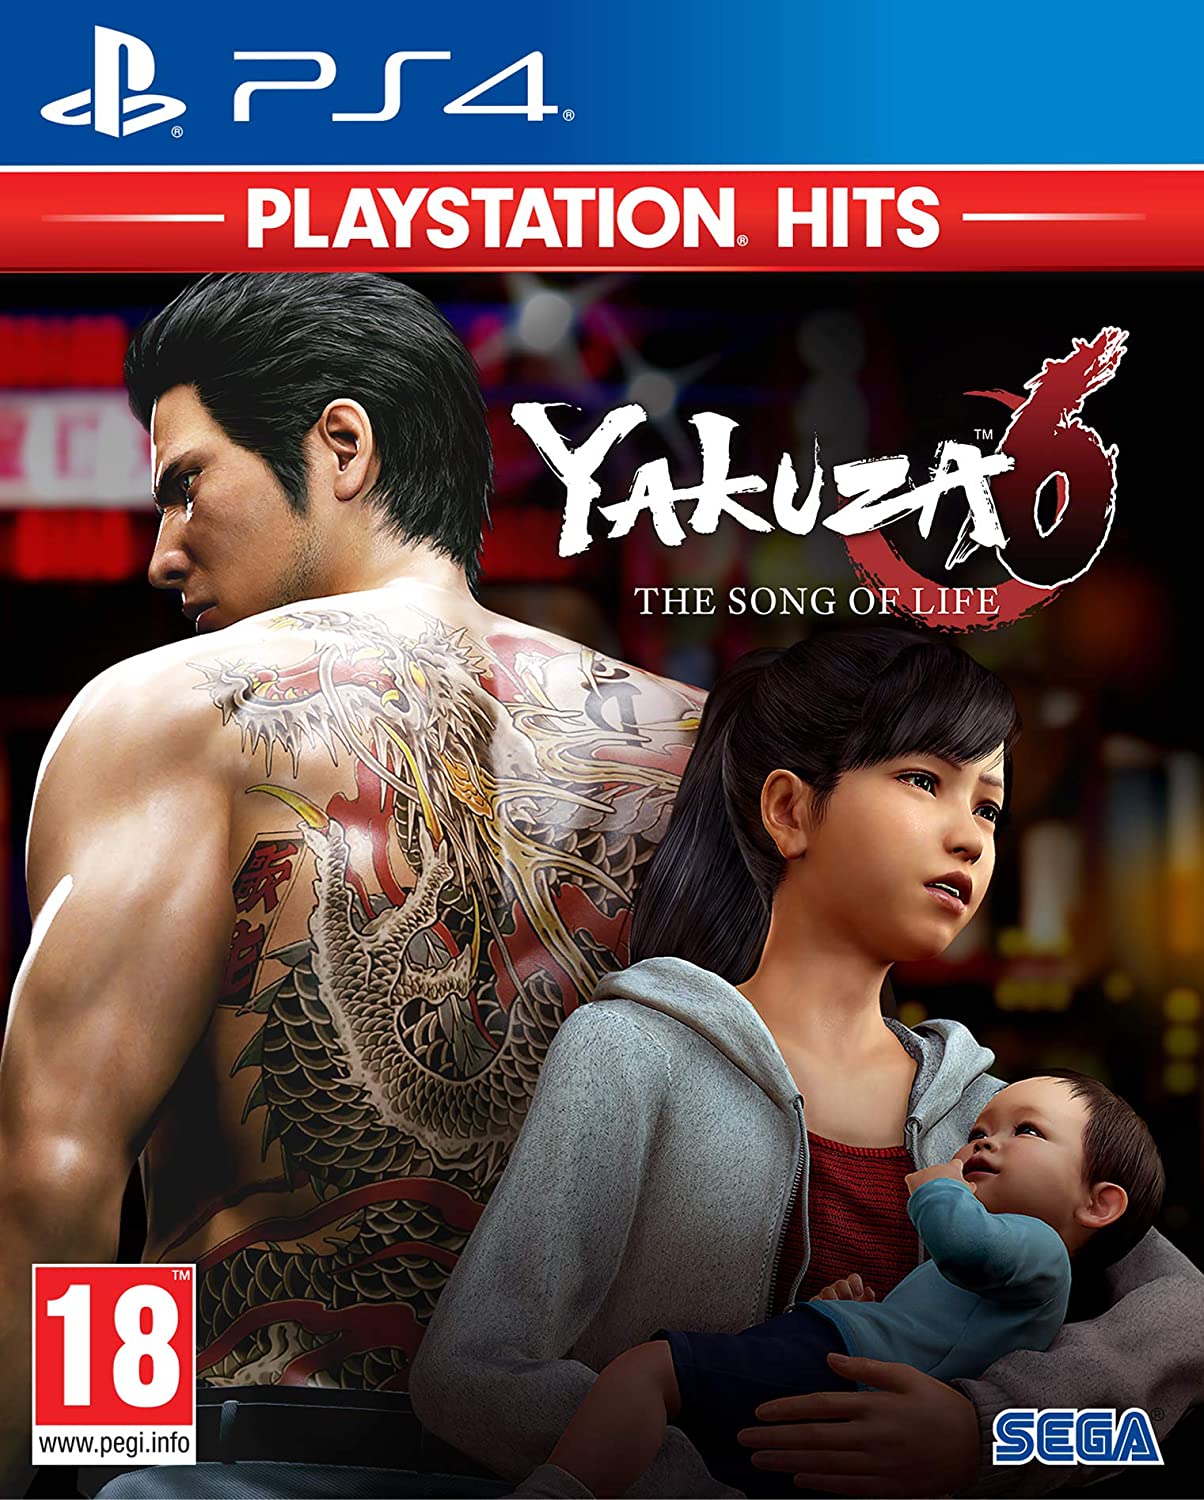 Yakuza 6 The Song of Life - PS4 | Yard's Games Ltd